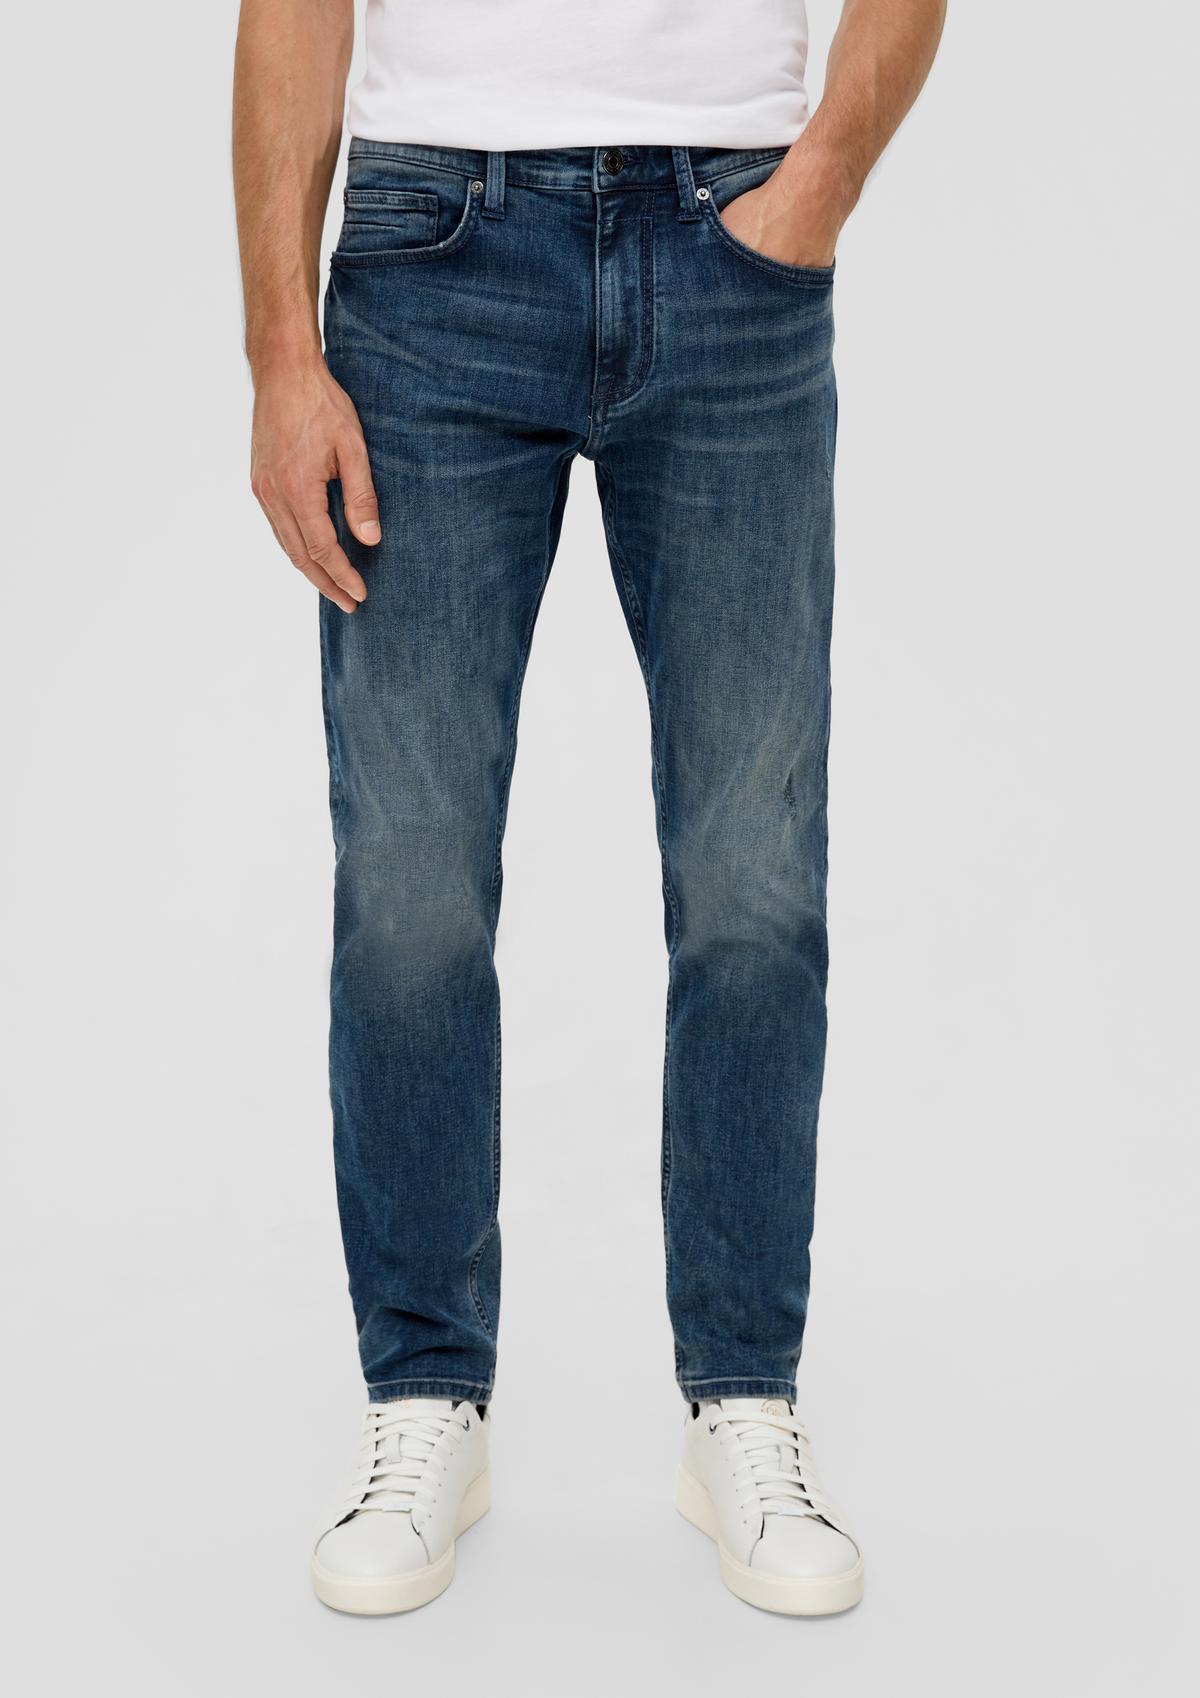 s.Oliver Jeans / regular fit / mid rise / tapered leg / 5-pocket-model